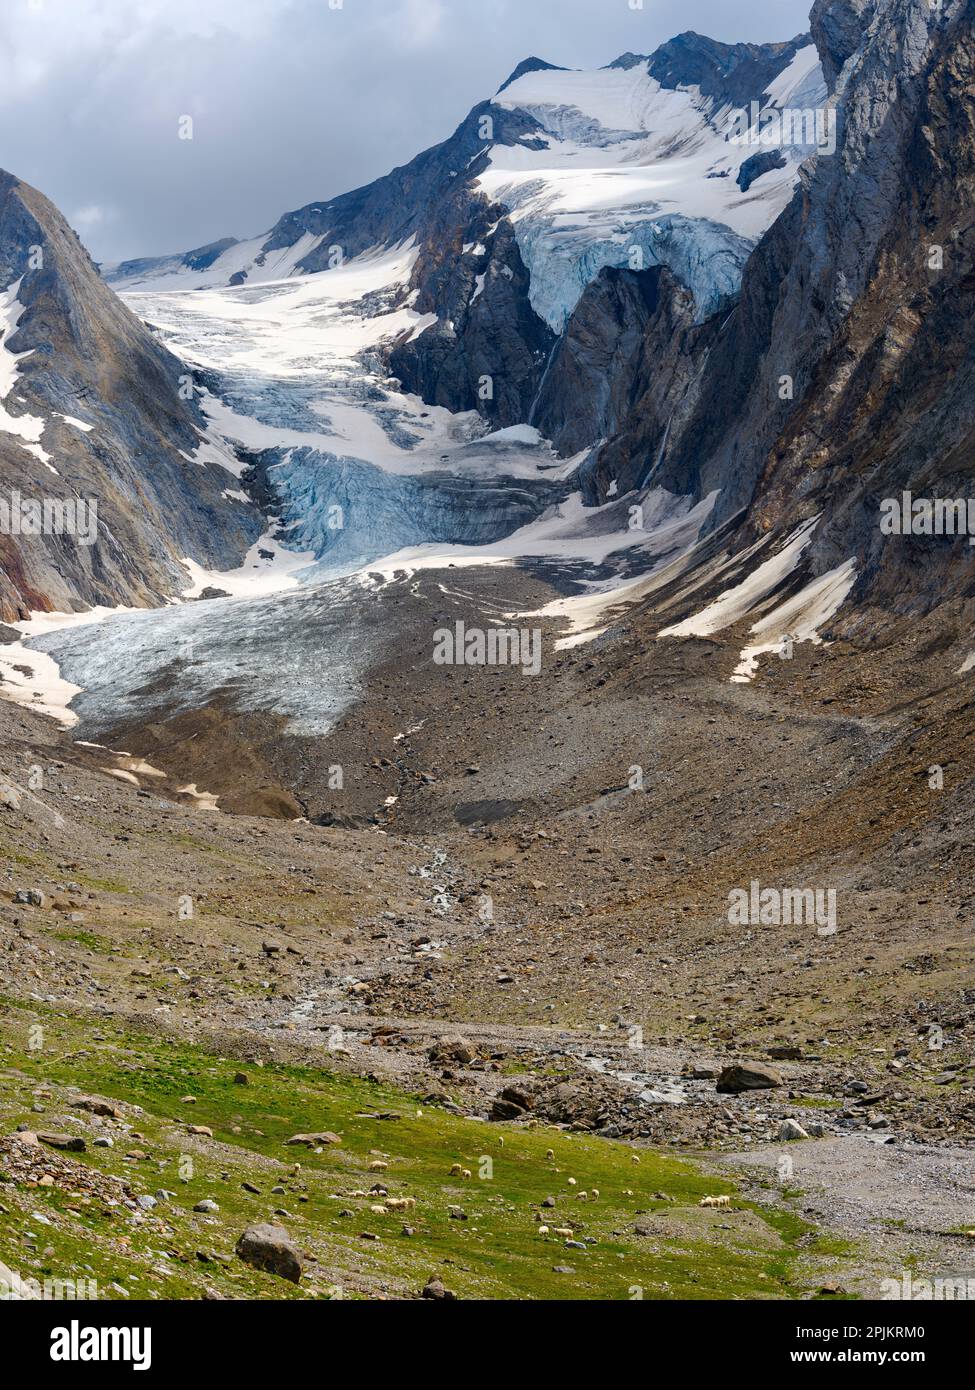 Vallée de Gaisbergtal et glacier en fusion Gaisbergferner. Alpes de l'Otztal dans le parc naturel de l'Otztal. Europe, Autriche, Tyrol Banque D'Images